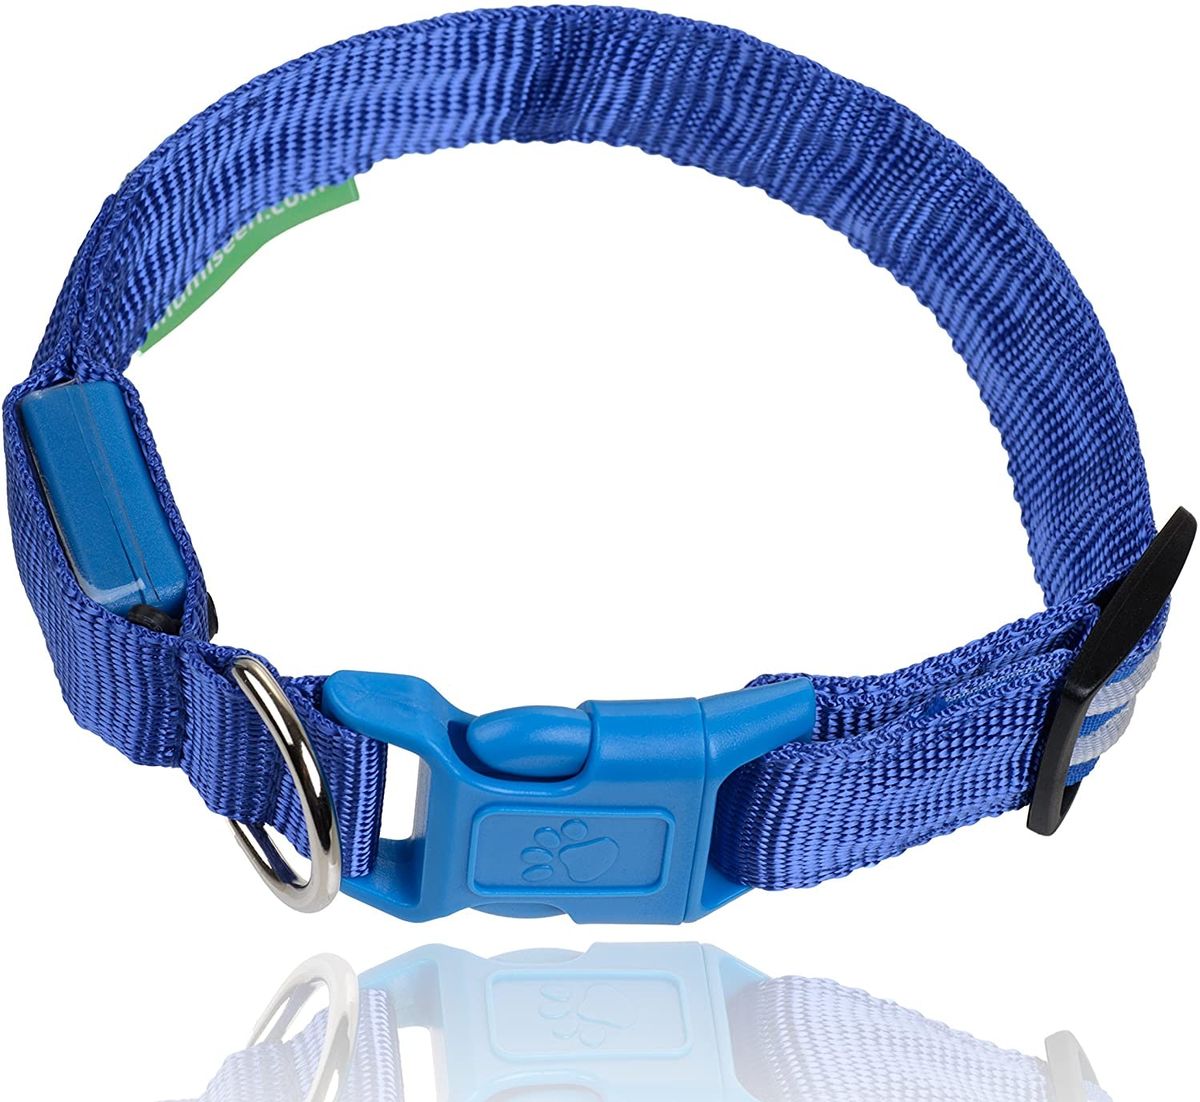 5 labākās LED kaklasiksnas suņu siksnām, lai jūsu kucēns būtu drošībā naktī